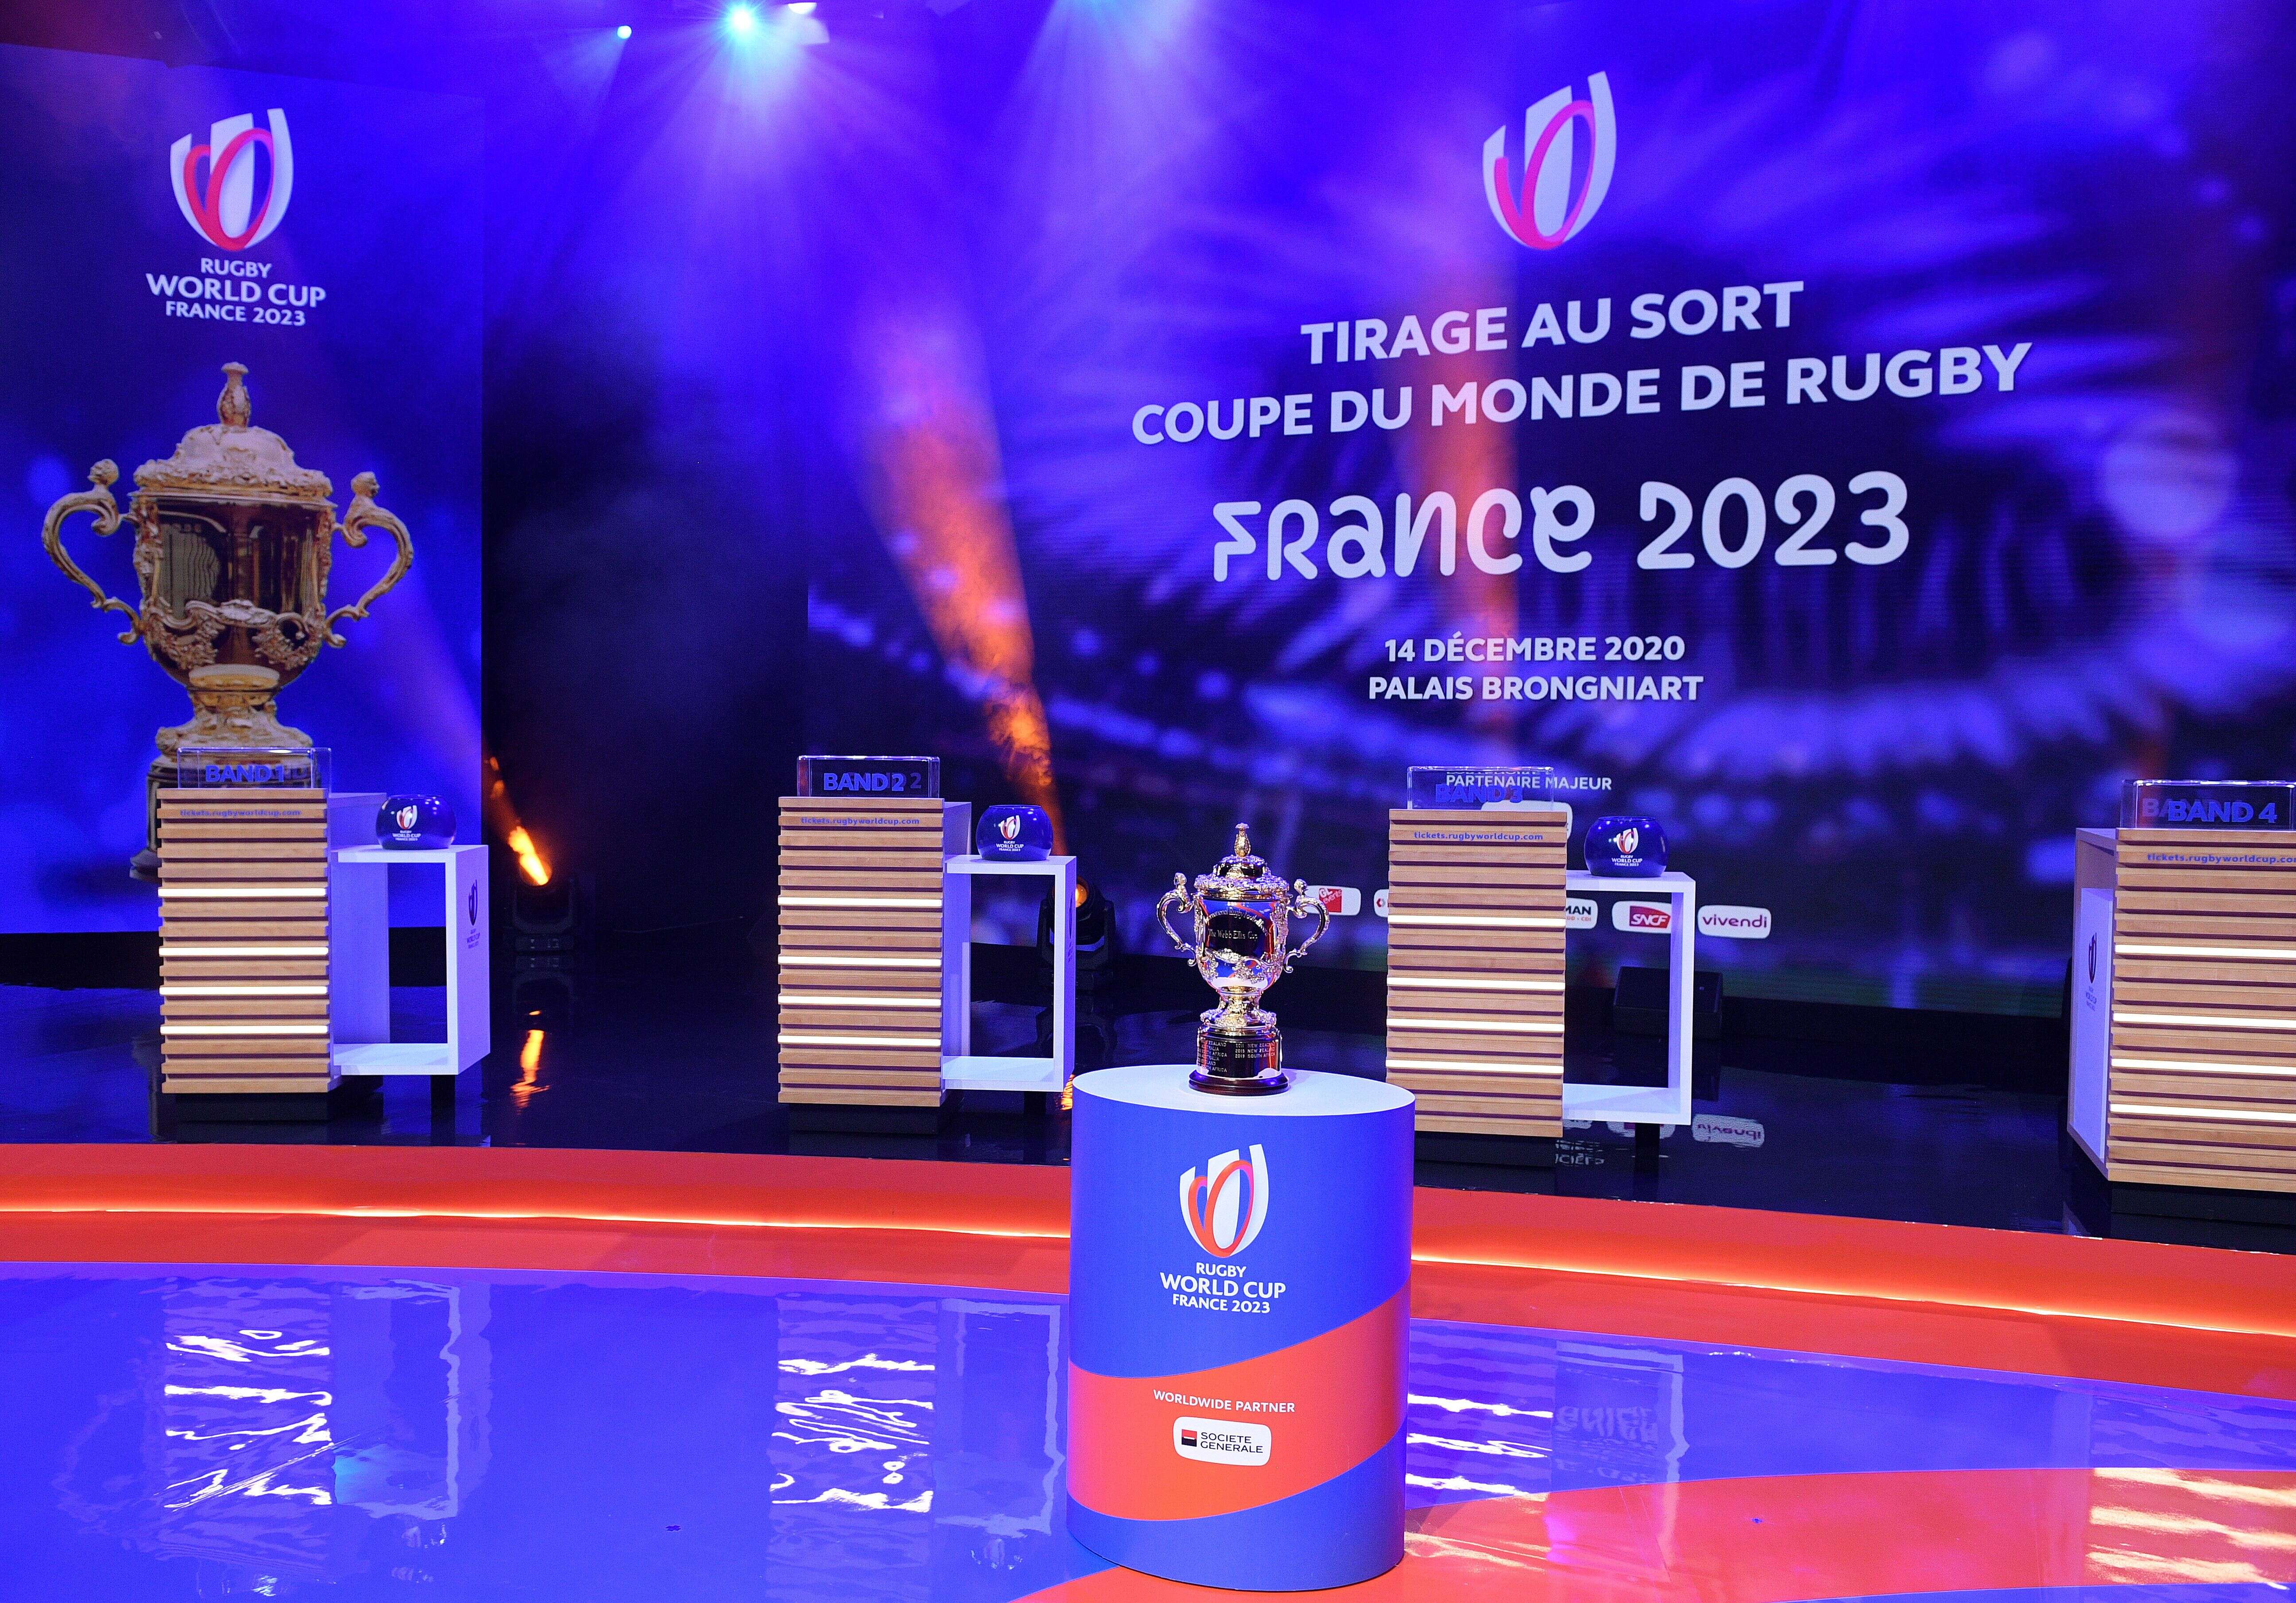 Le trophée Webb Ellis Cup de la Coupe du monde de rugby présenté au Palais Brongniart avant le tirage au sort de l'édition 2023, lundi 14 décembre 2020.